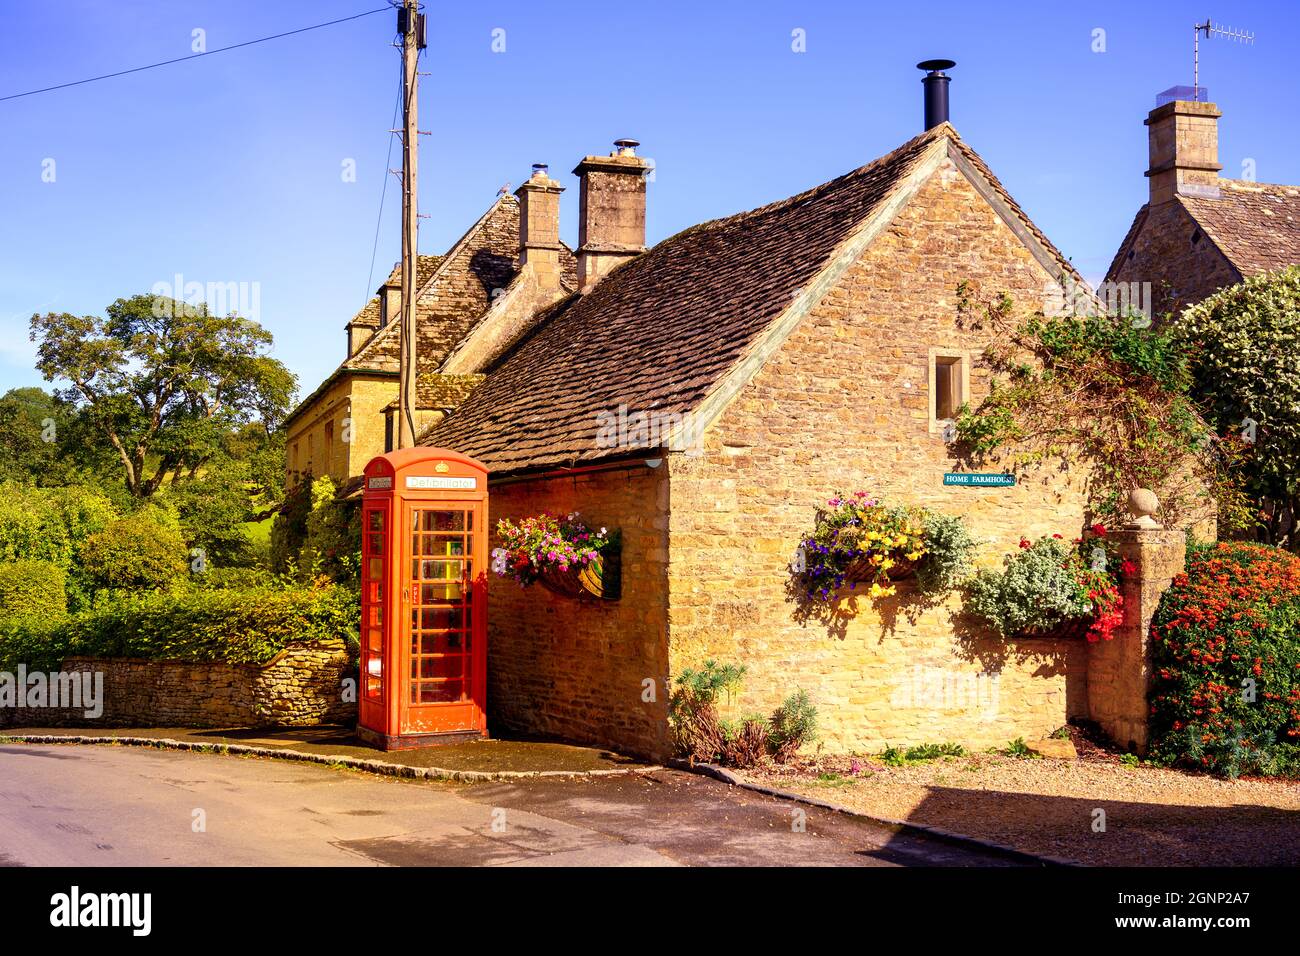 Traditionelle rote Telefonbox vor einem aus Stein gebauten Cotswold Cottage, das jetzt als Defibrillator-Lagerstation genutzt wird. Upper Slaughter Gloucestershire England Großbritannien Stockfoto